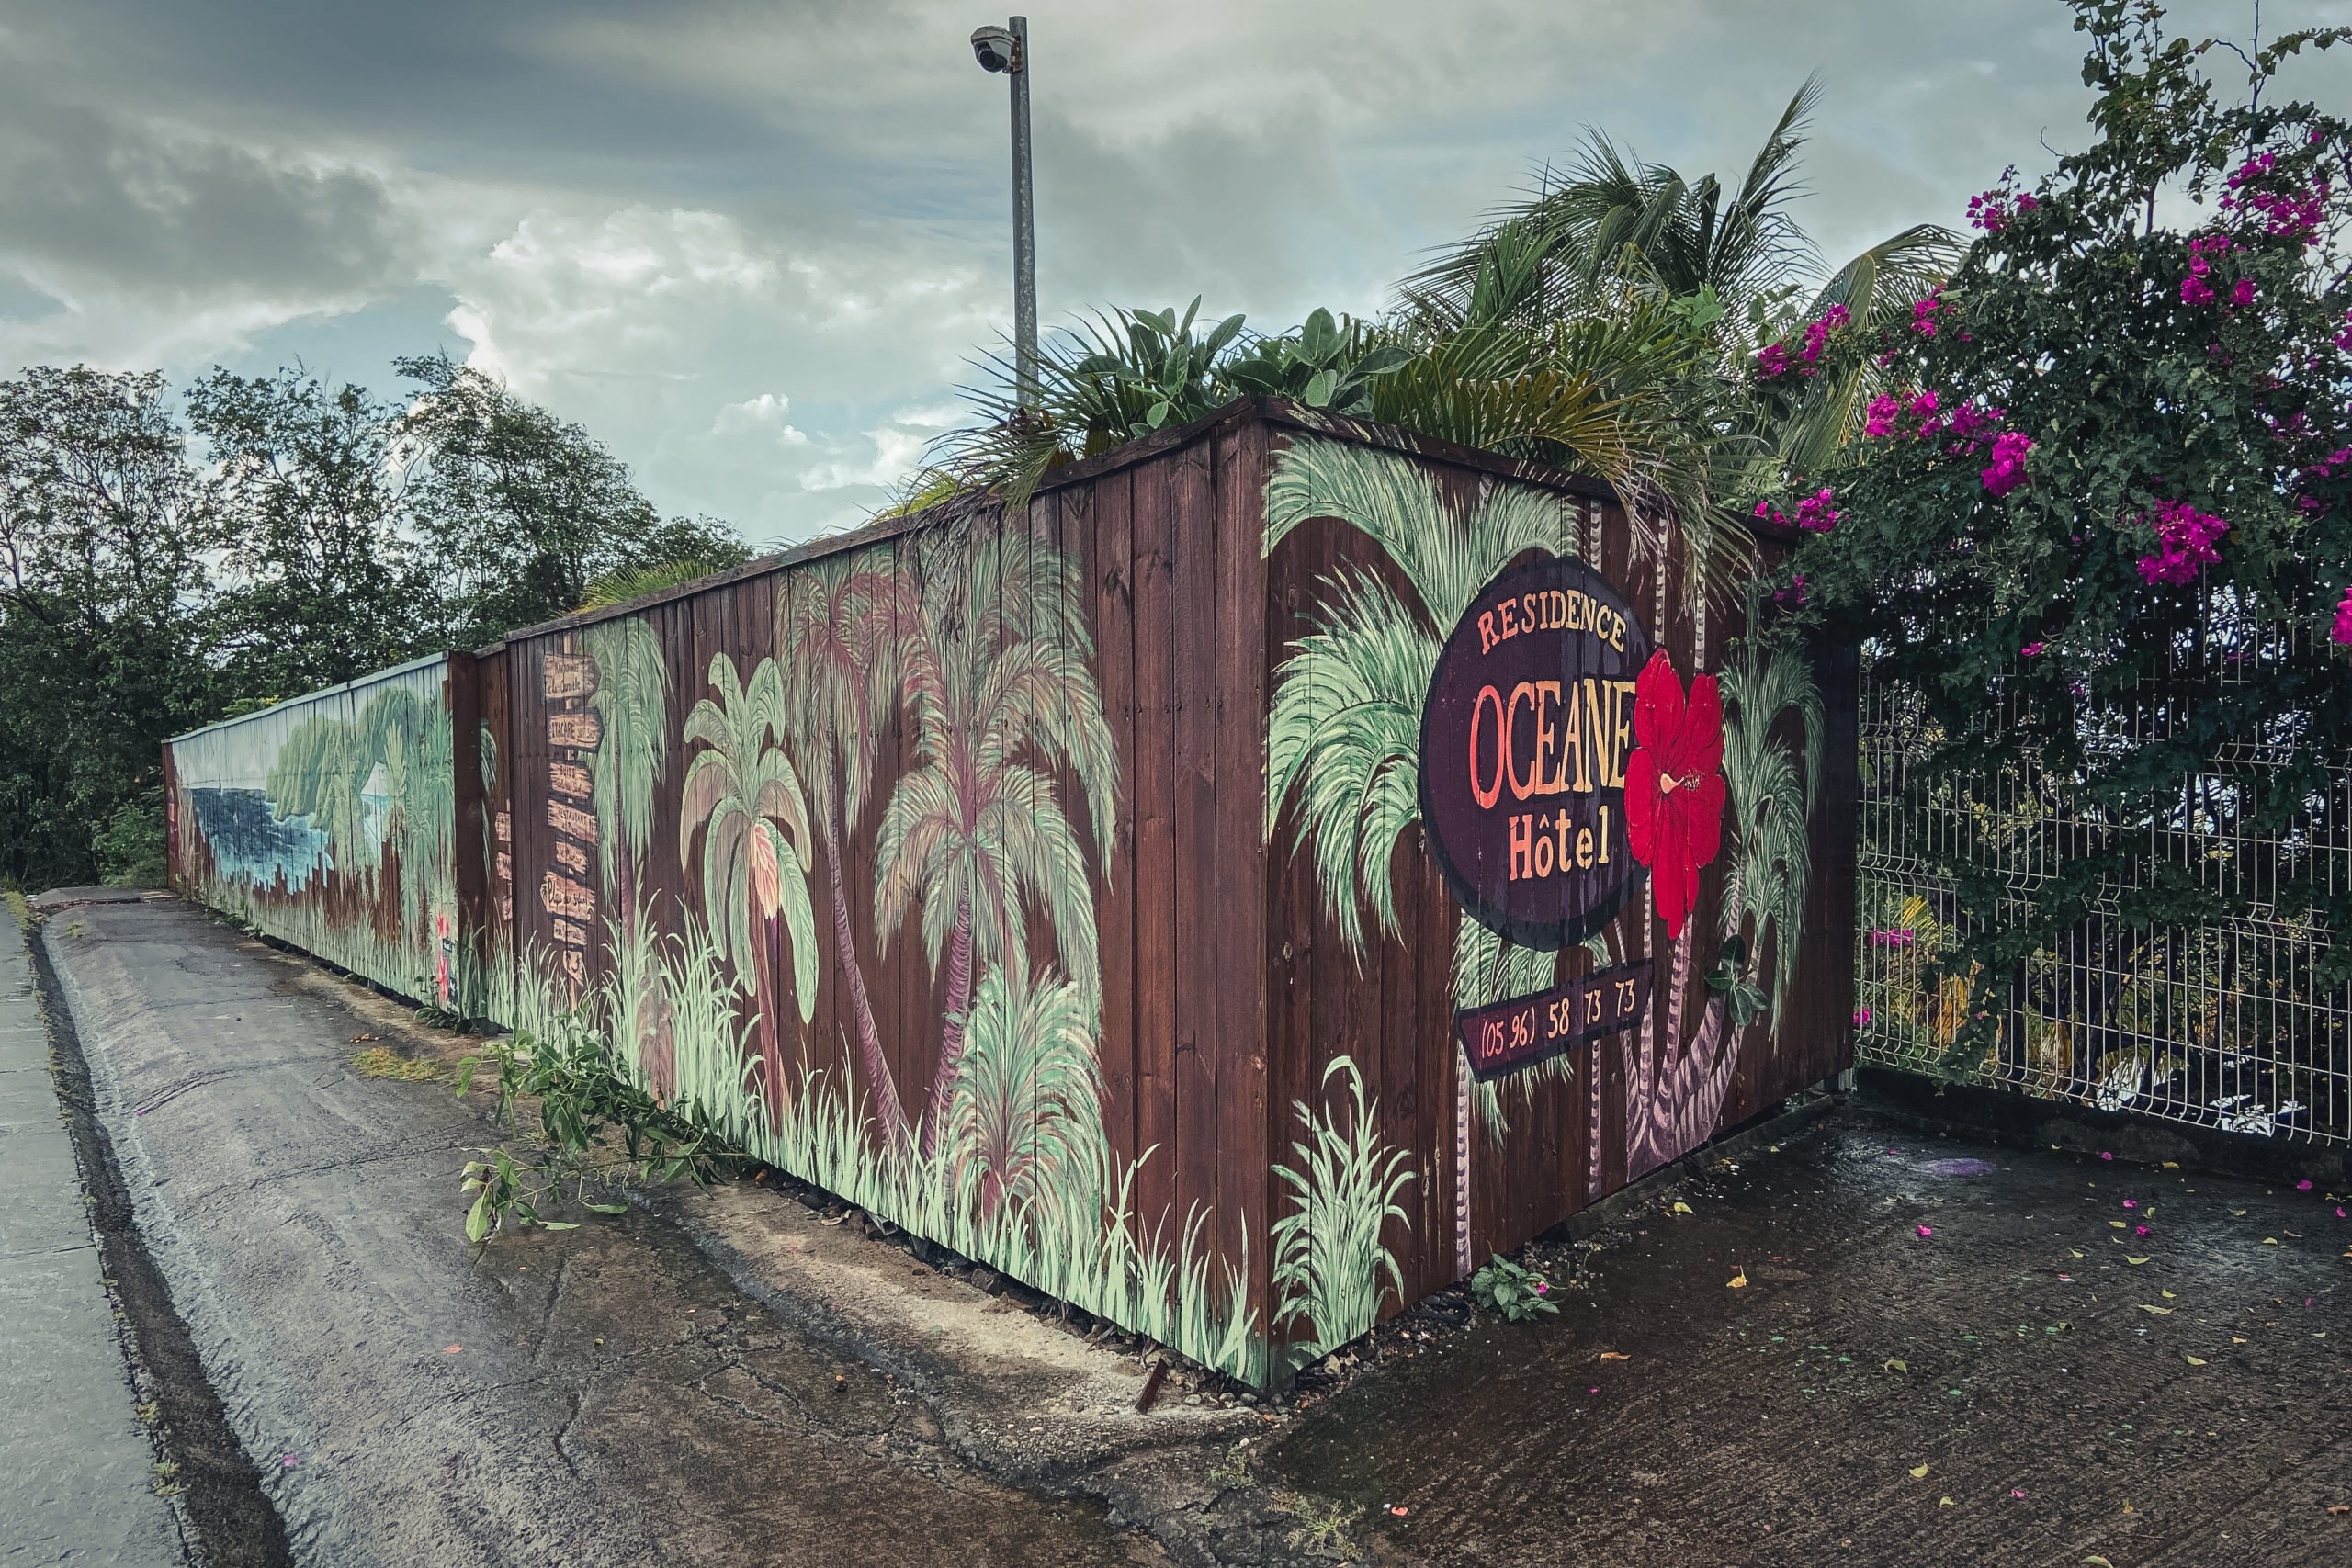 Travels blakeproduction / Martinique Atlantique